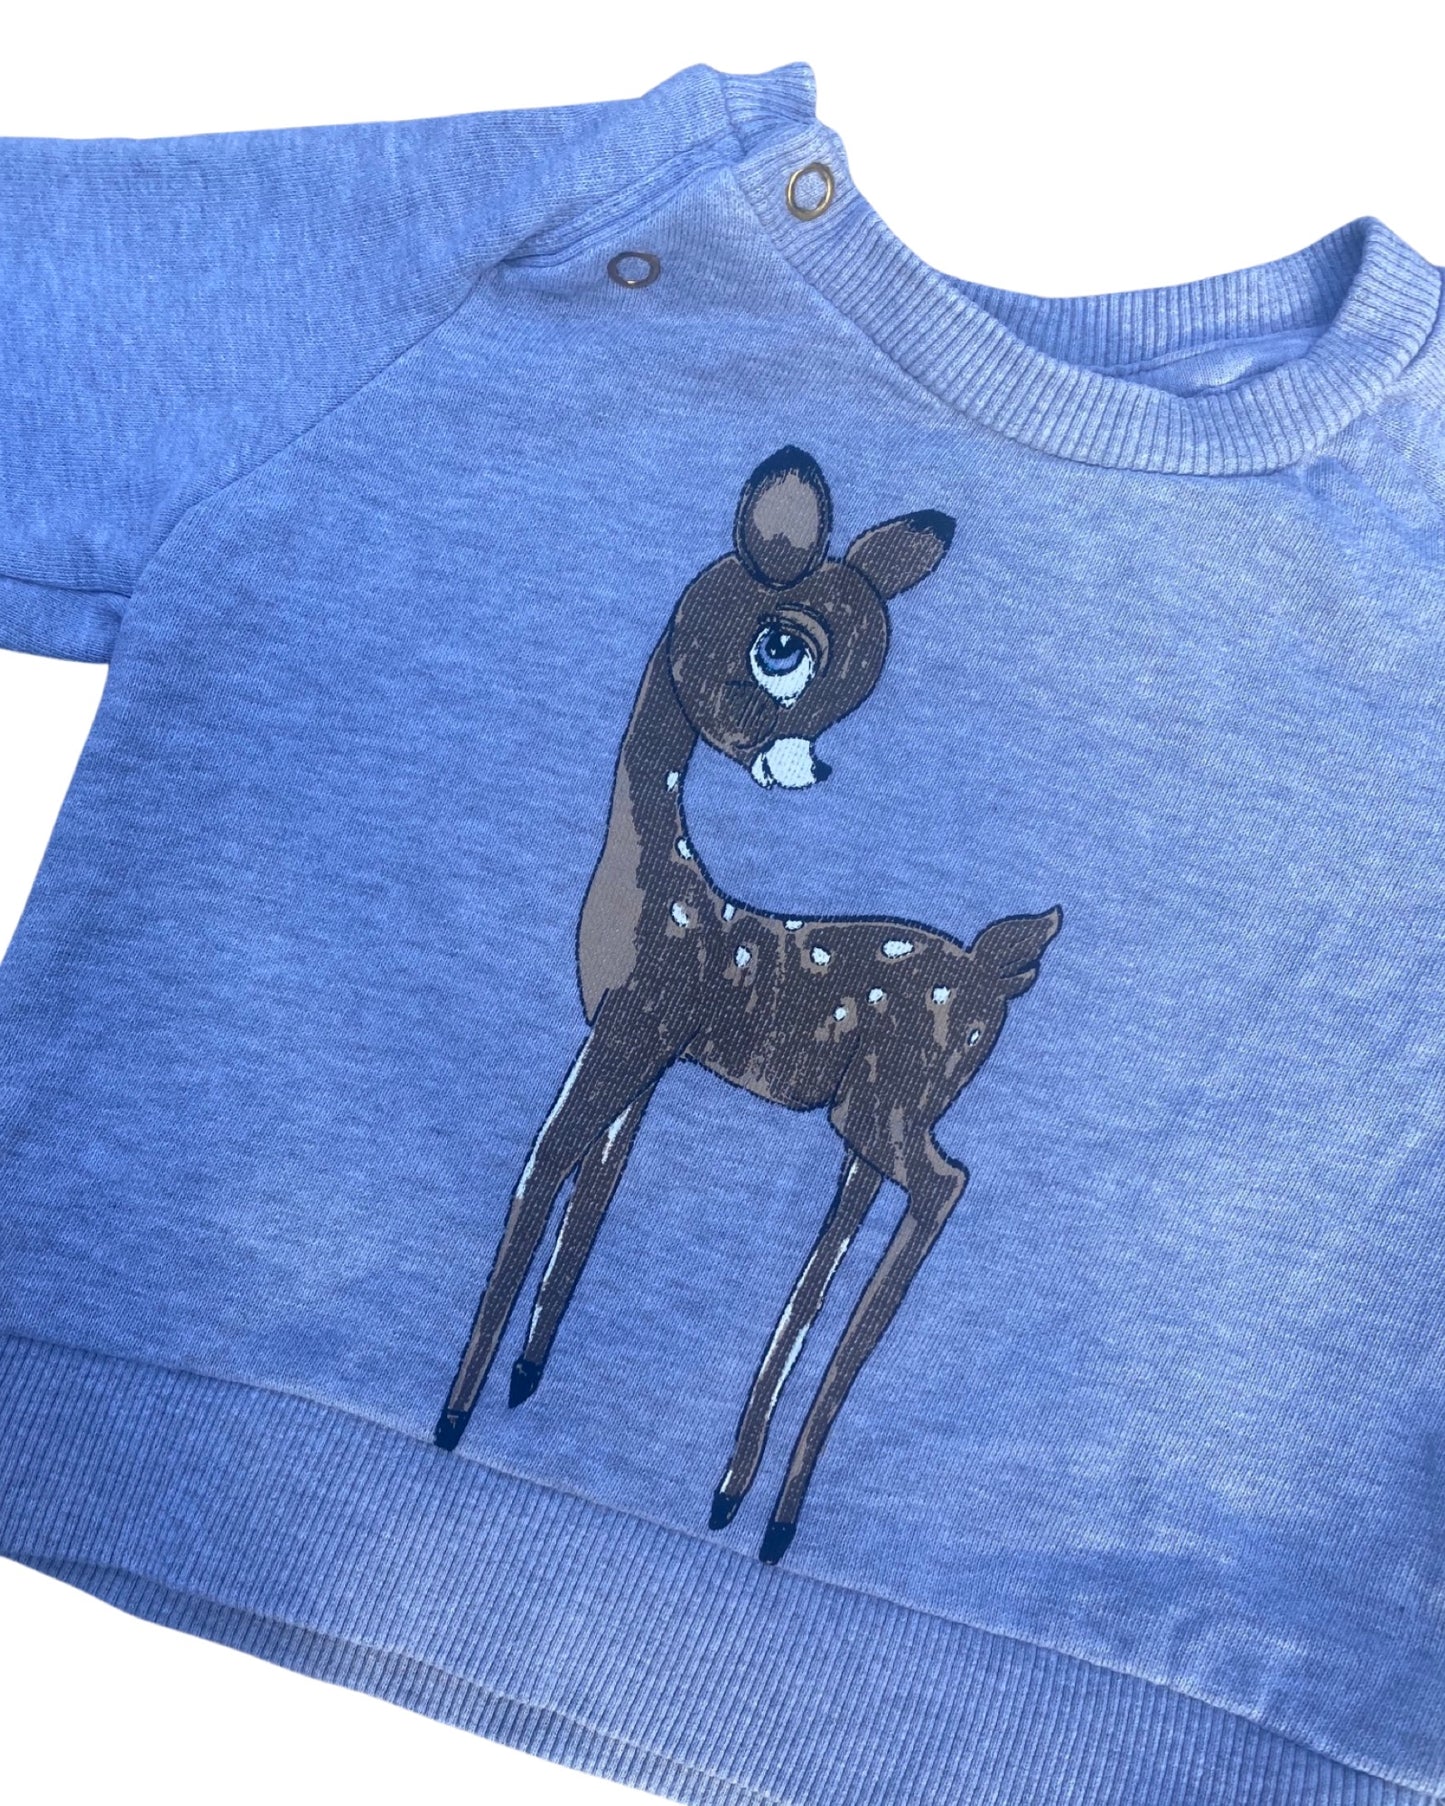 Mini Rodini Deer print sweater (1-4mths)